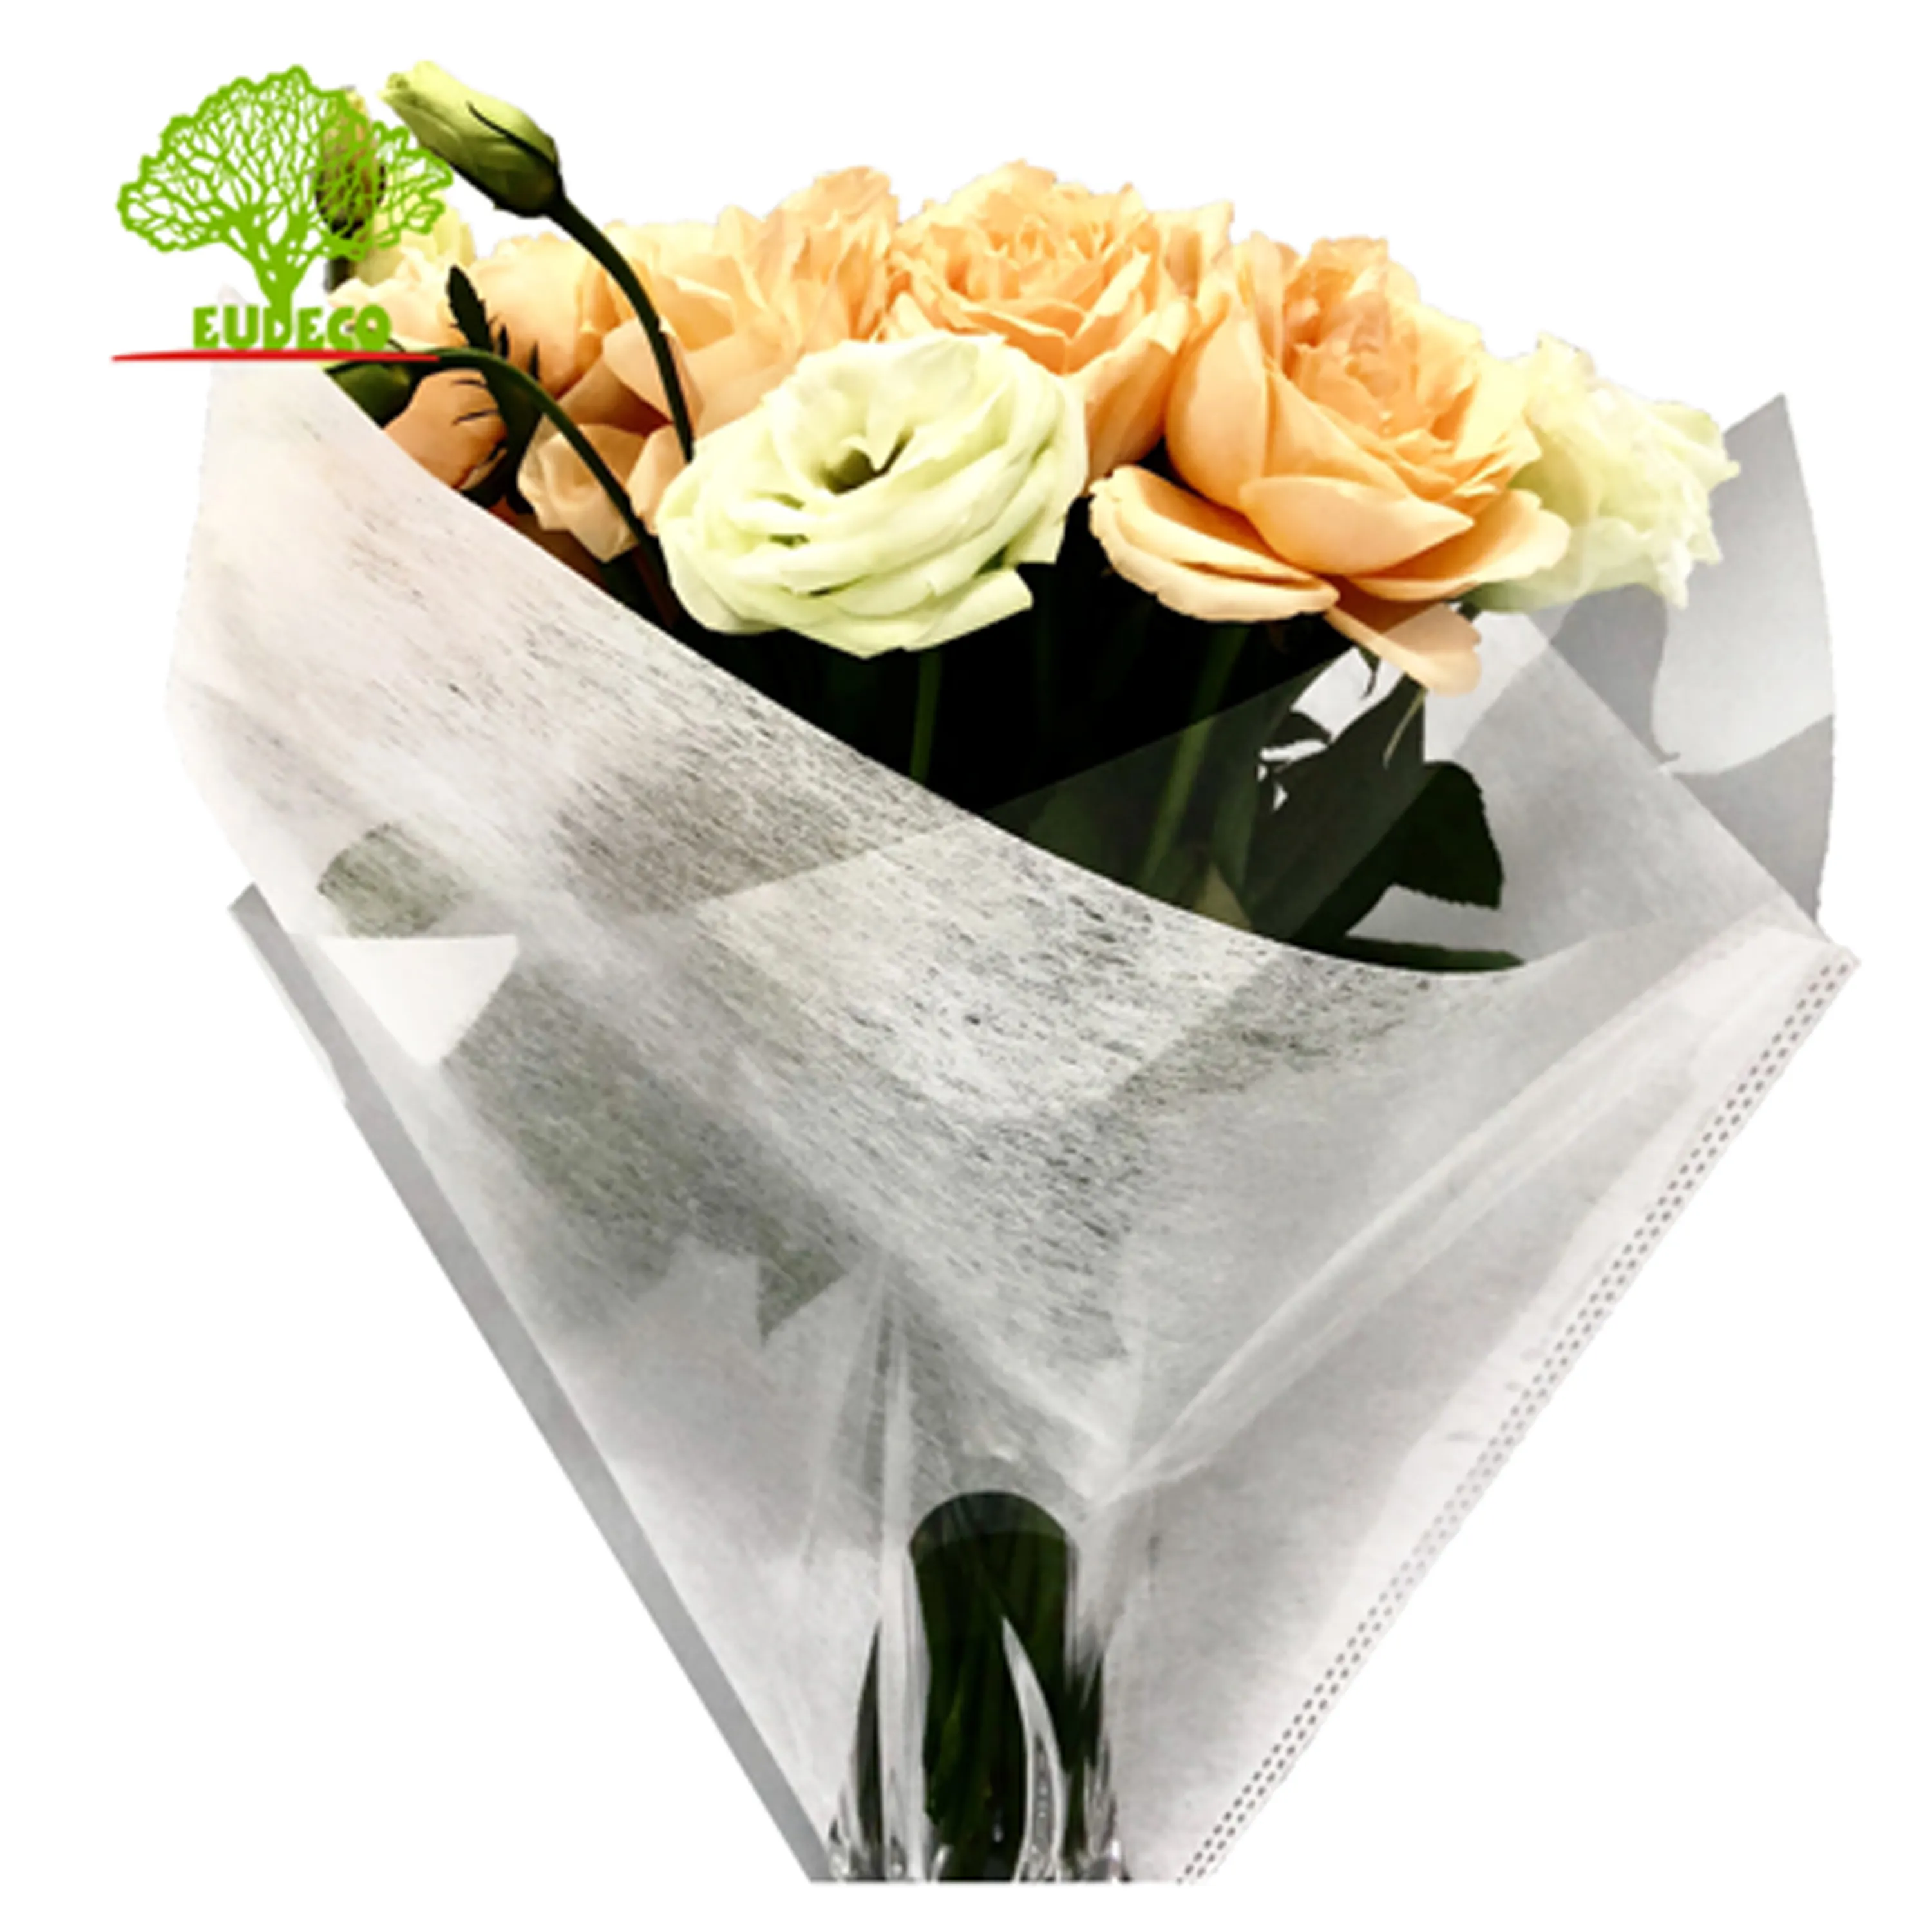 Top Seller Blumen ärmel mit Qualitäts sicherung Blumen verpackung Doppel hülse für frisch geschnittene Blumen